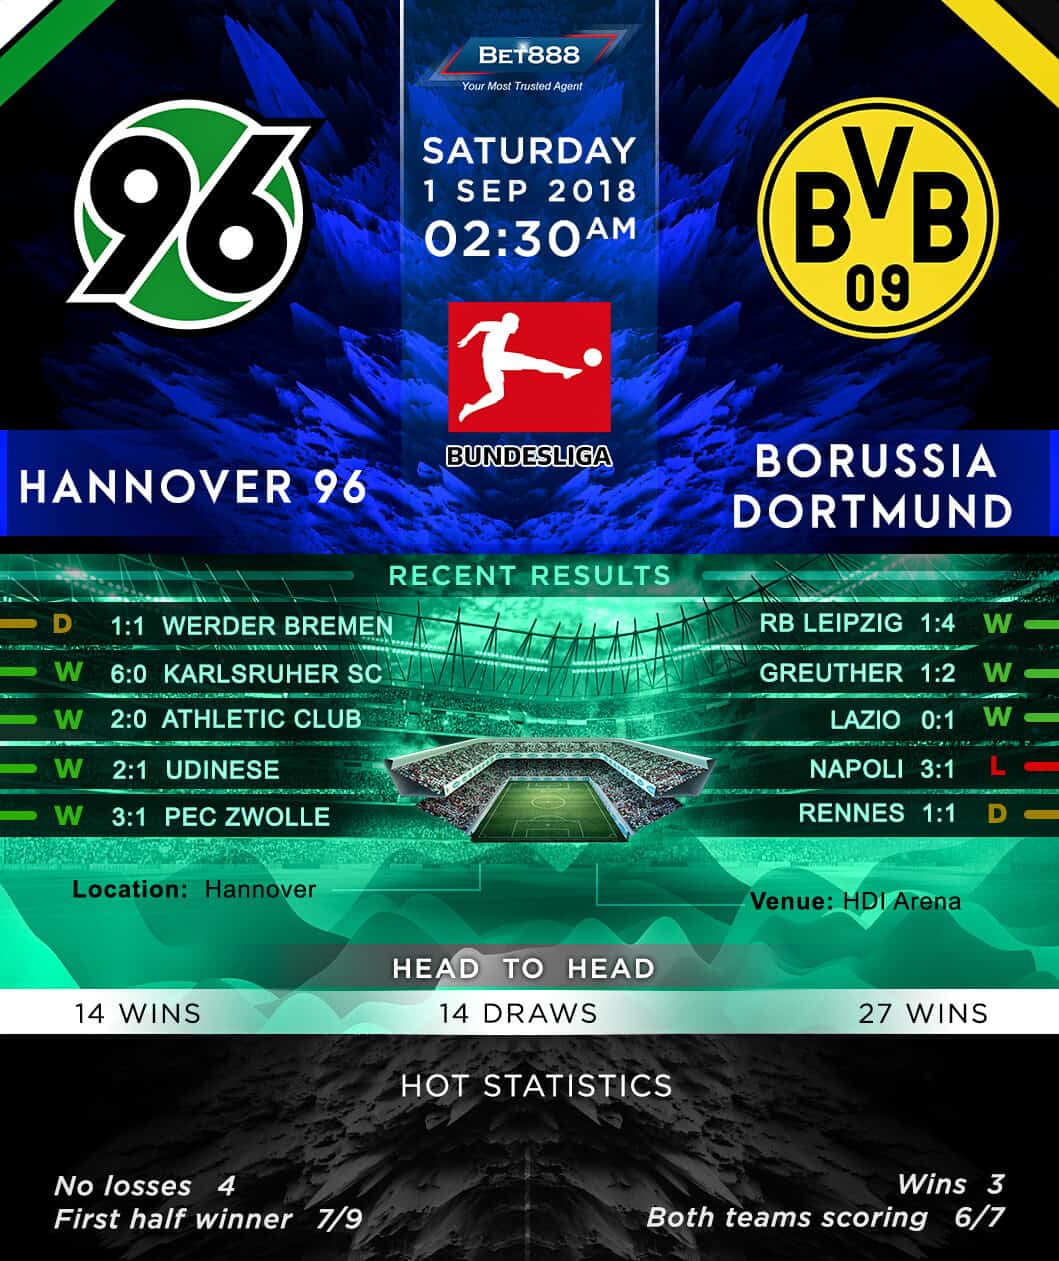 Hannover 96 vs Borussia Dortmund 01/09/18